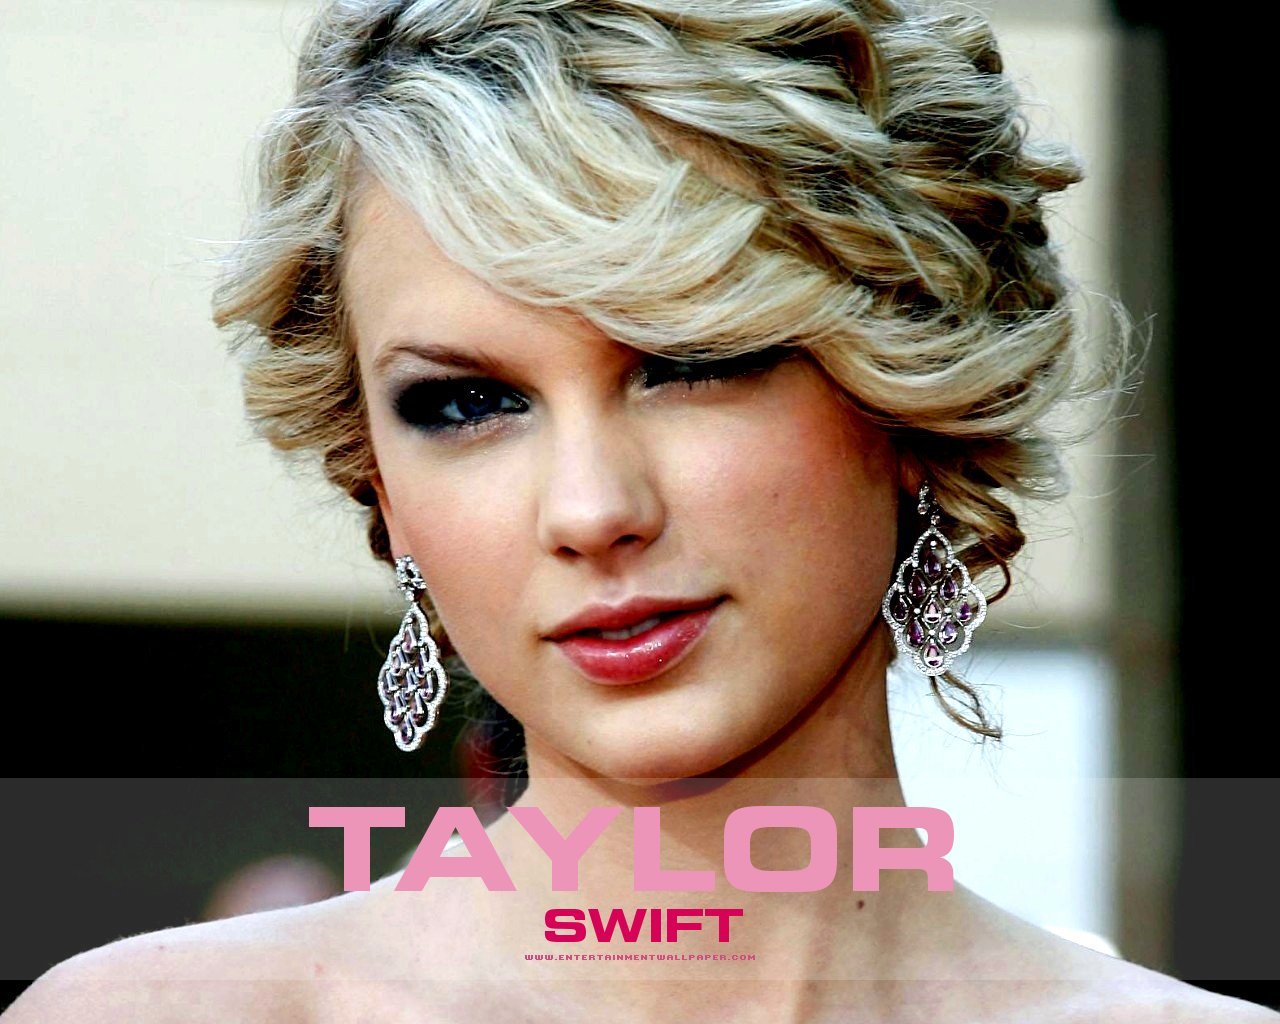 Wallpapers De Taylor Swift Fanpop